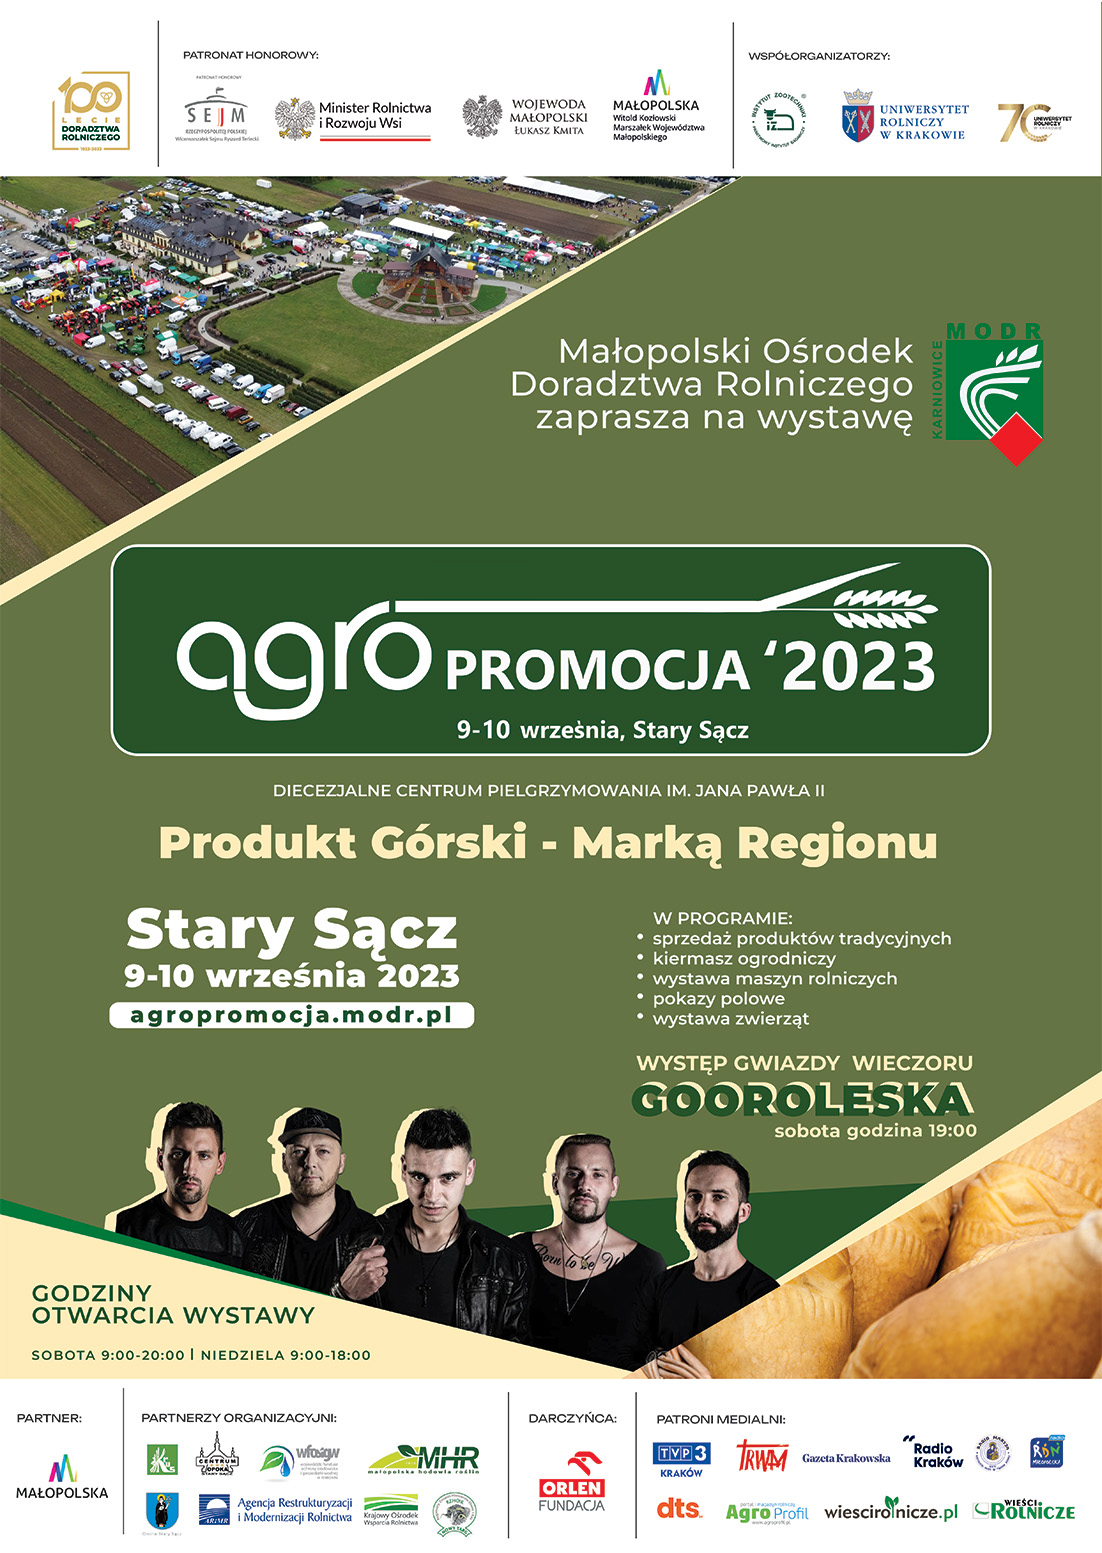 Wystawa Rolnicza AGROPROMOCJA 2023